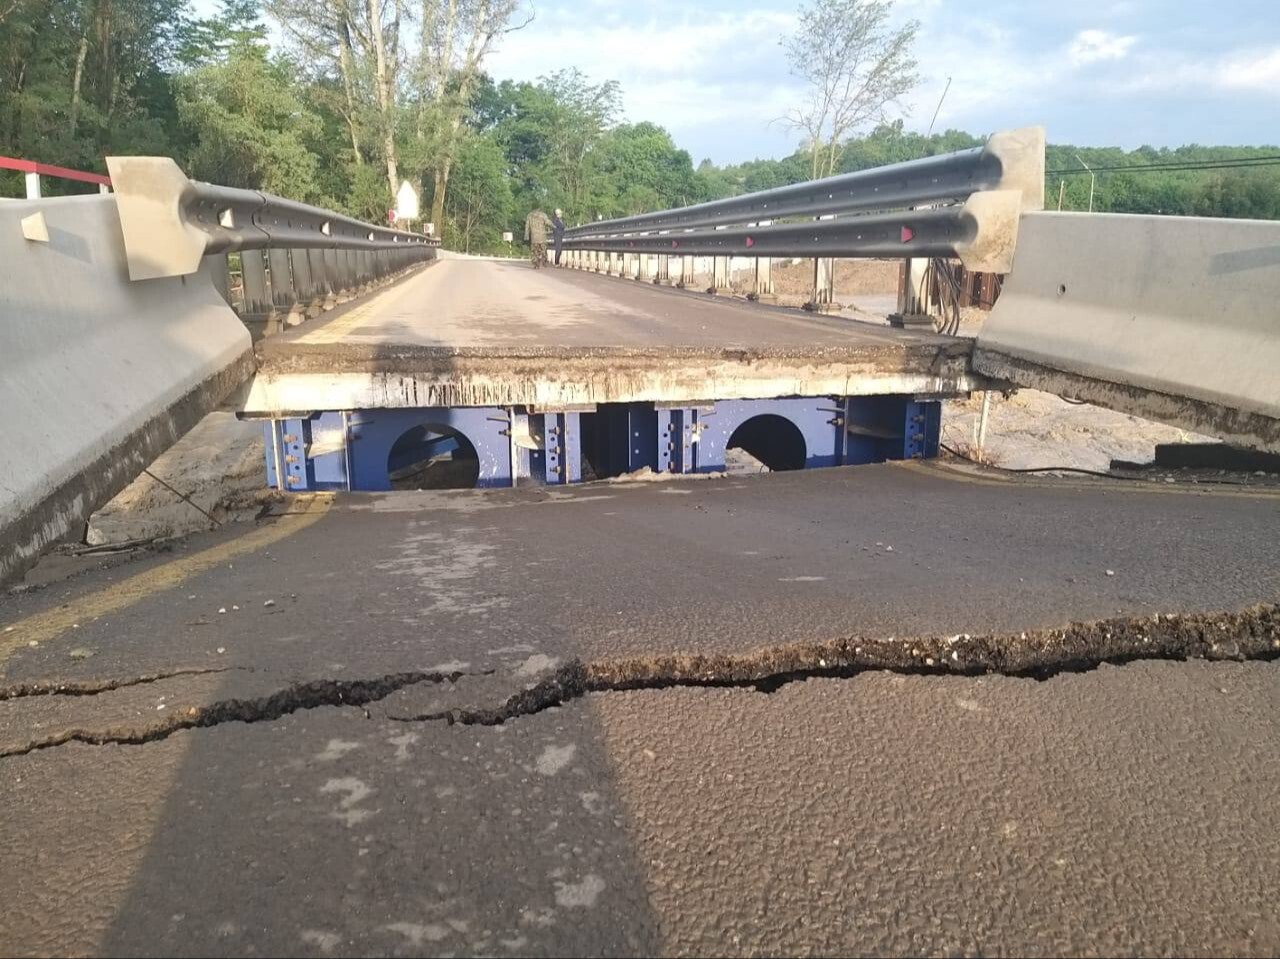 Движение на участке федеральной дороги в Мостовском районе на Кубани перекрыто из-за повреждения моста - ГИБДД